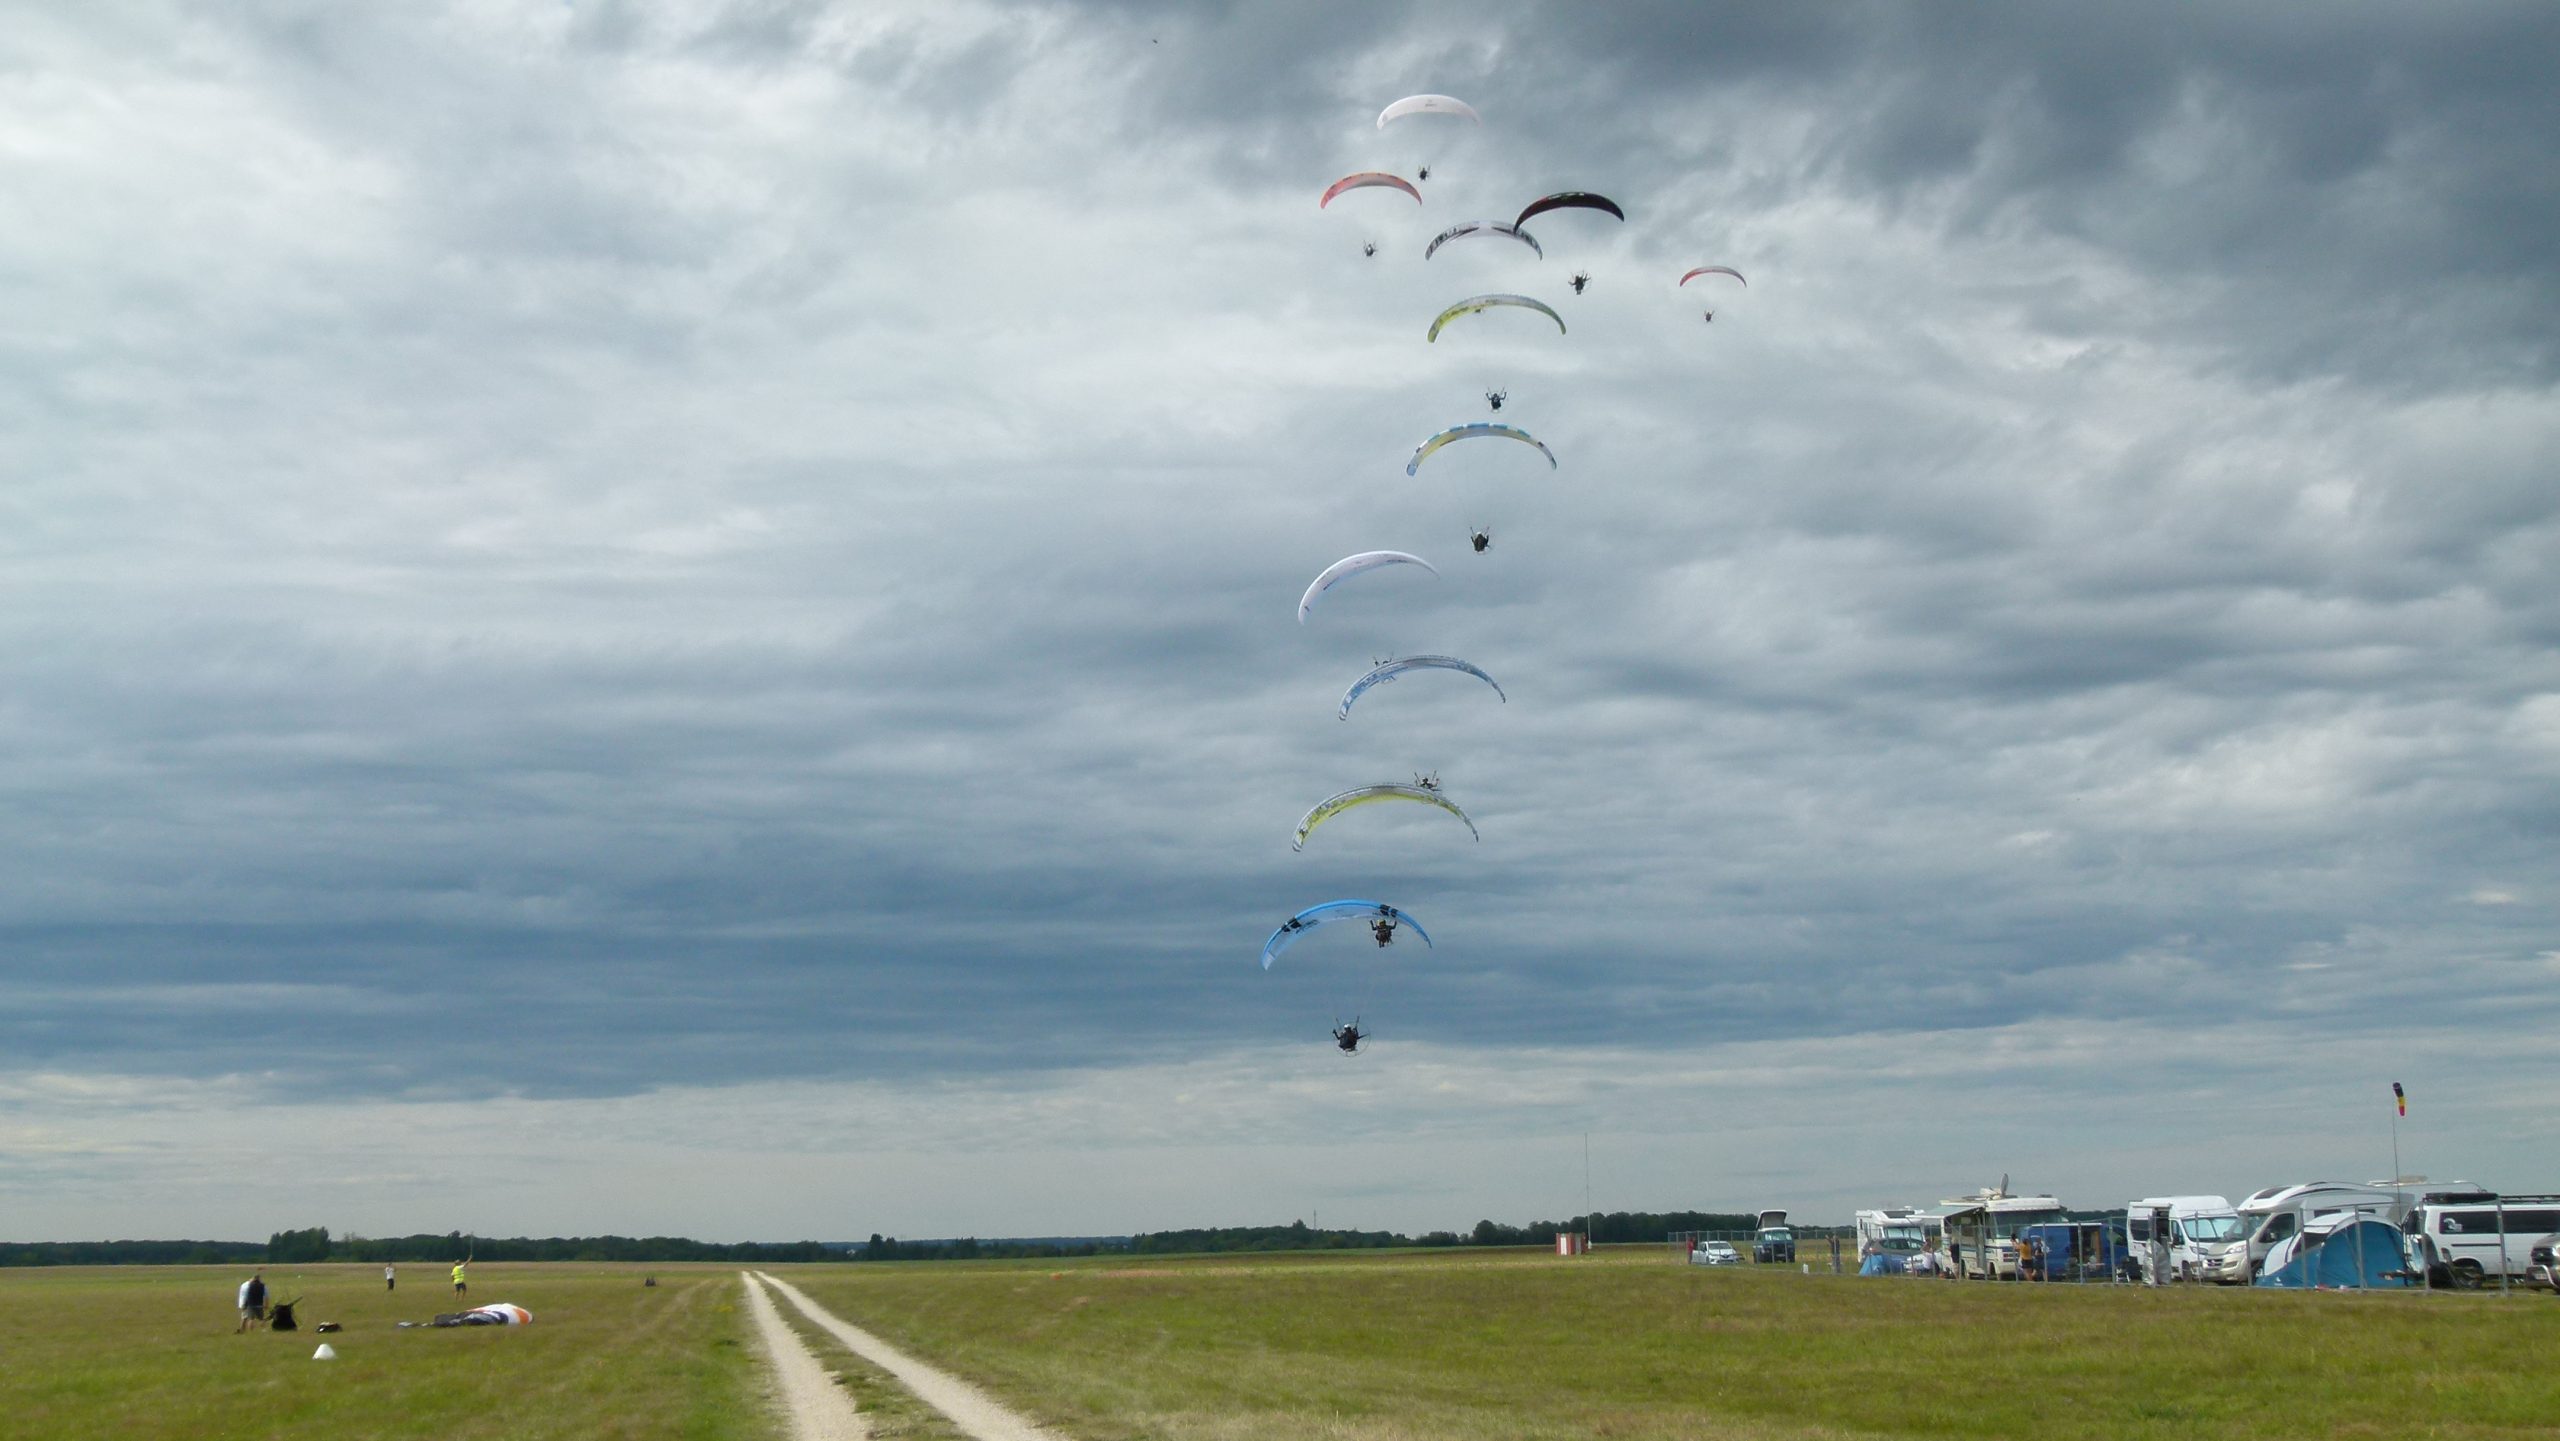 Démonstration de parachutisme. Sur un ciel cotonneux, une douzaine de parachutes descendant en colonne vers le sol herbeux amorcent leur atterrissage .